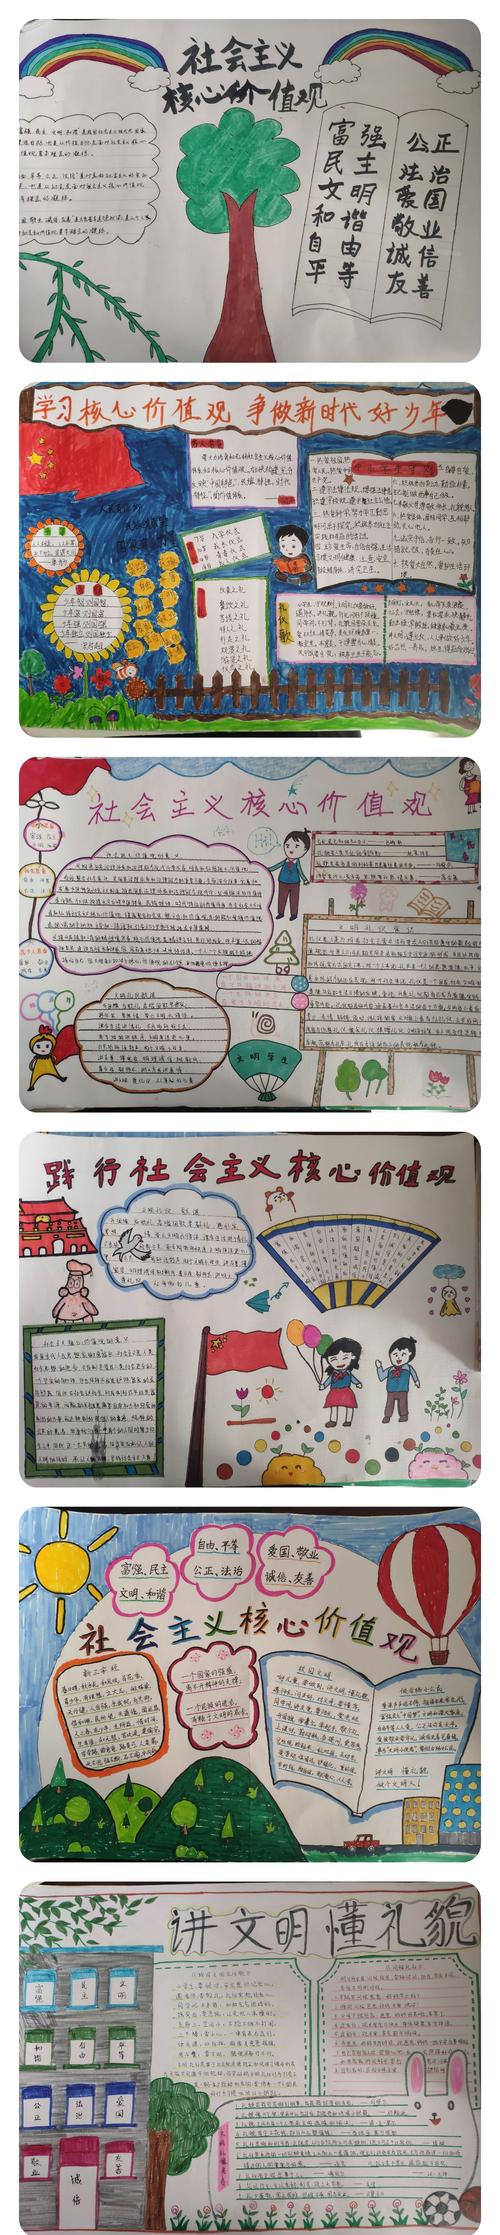 手抄报活动 写美篇         为丰富同学们的校园文化生活深化爱国